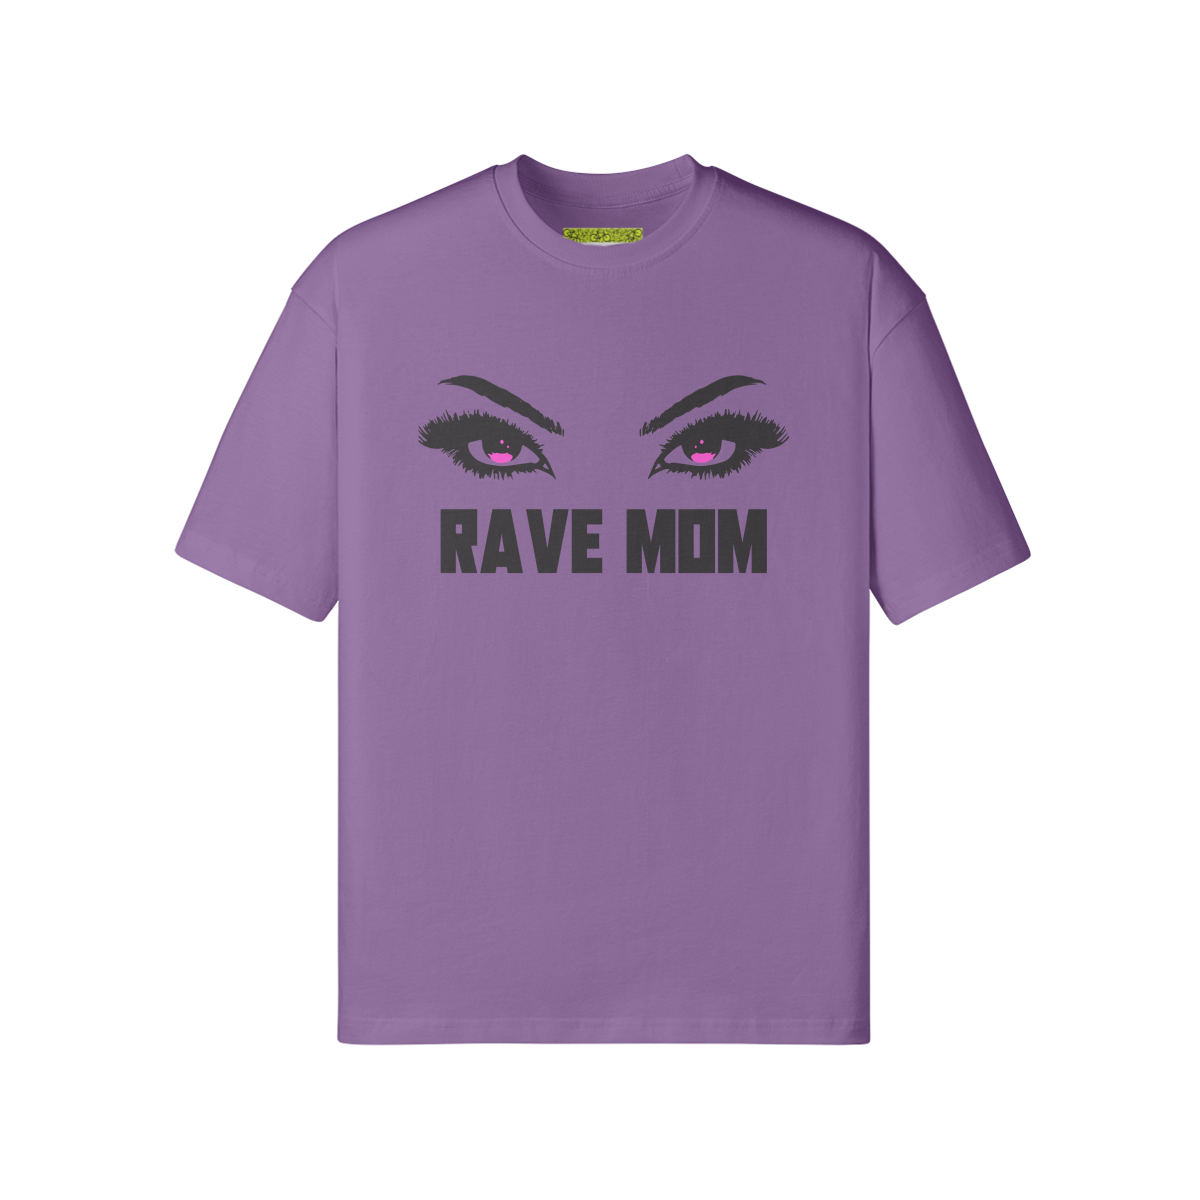 OG RAVE MOM - Loose T-shirt